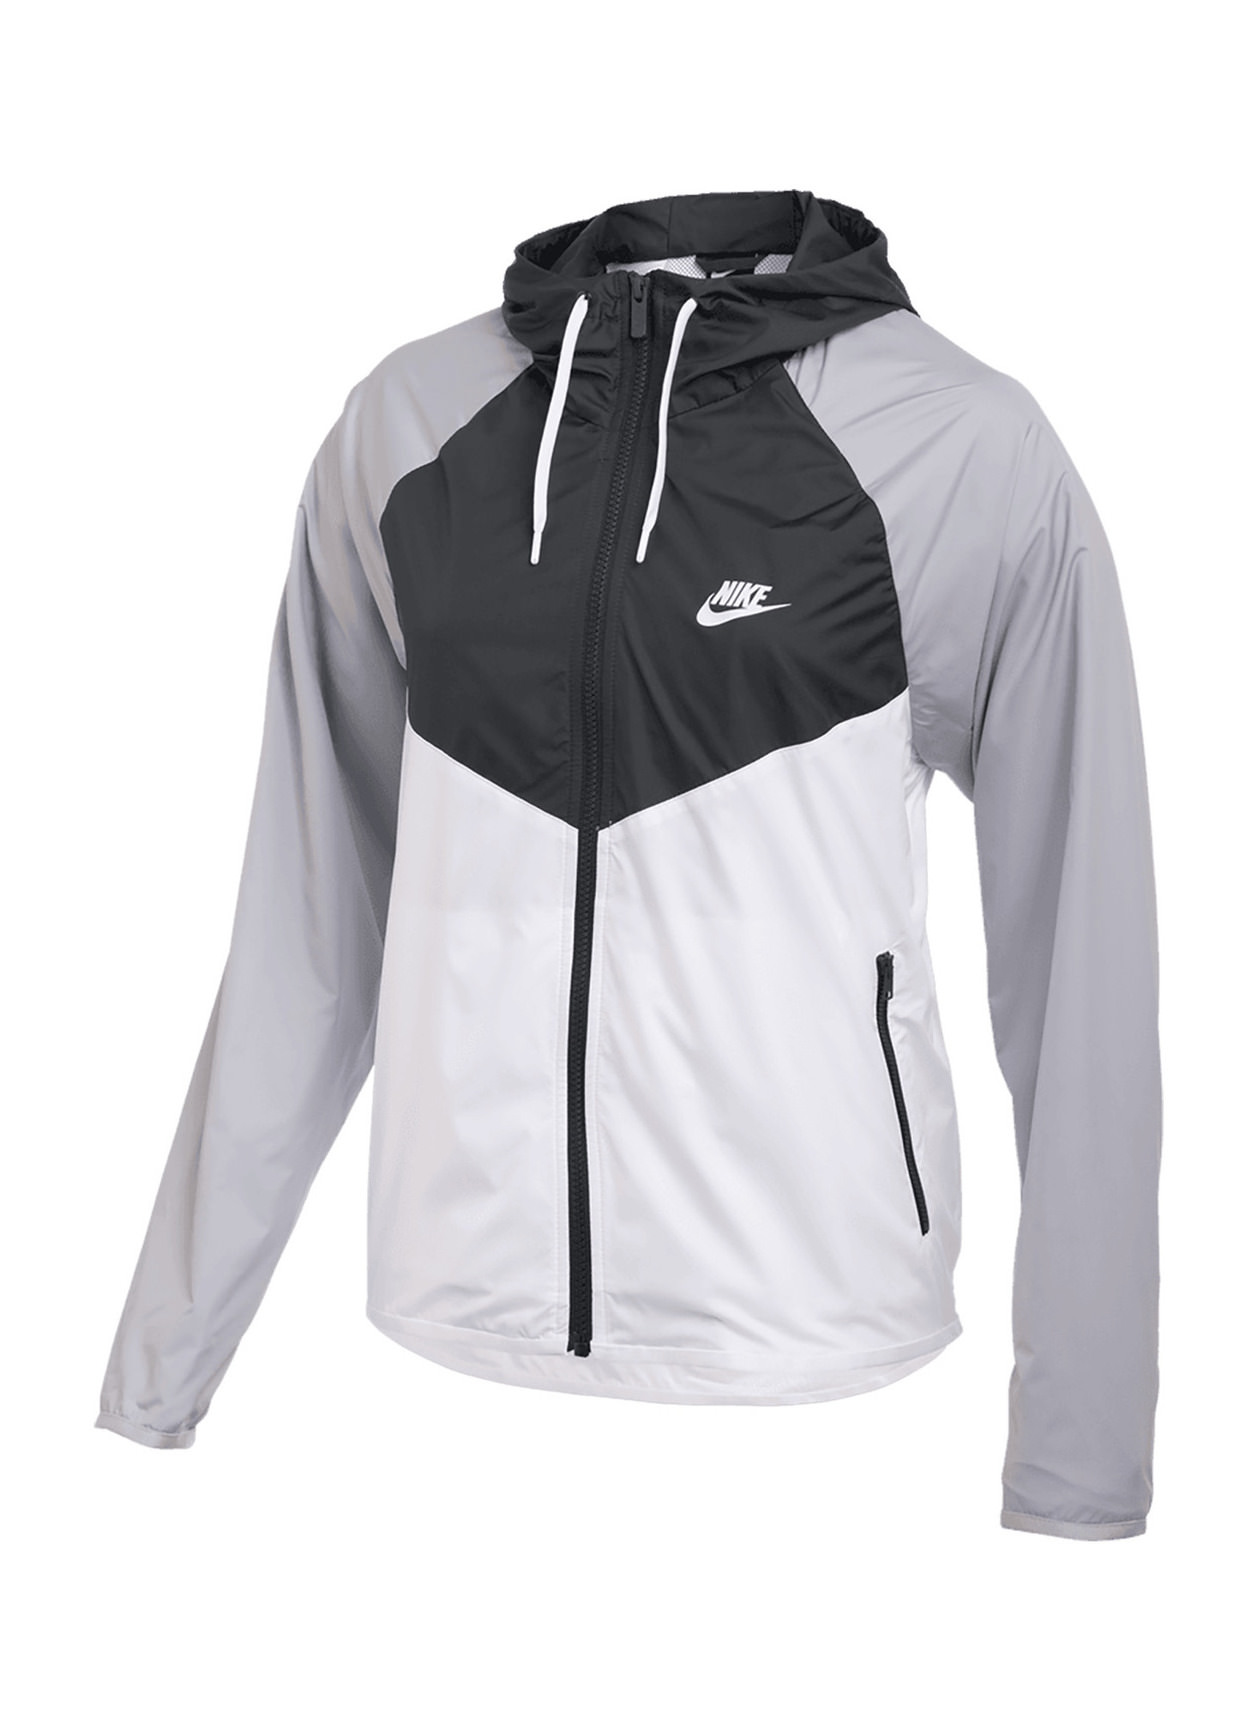 Nike Sportswear Women's Windbreaker Jacket Small NWT Gym